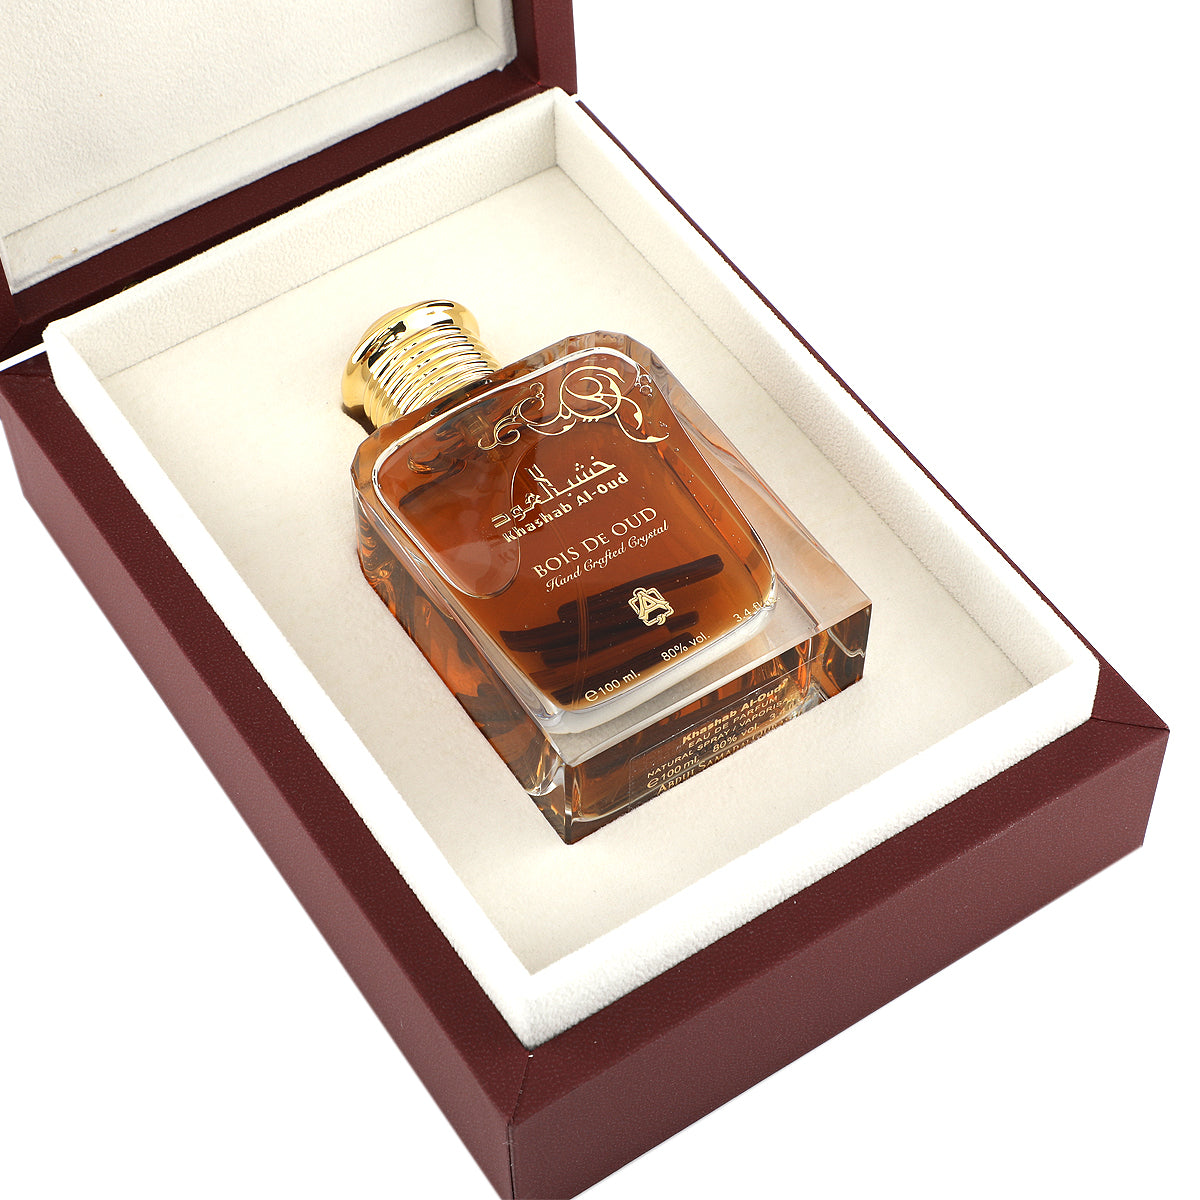 Bois De Oud Limited Edition Parfum Sample 2ml